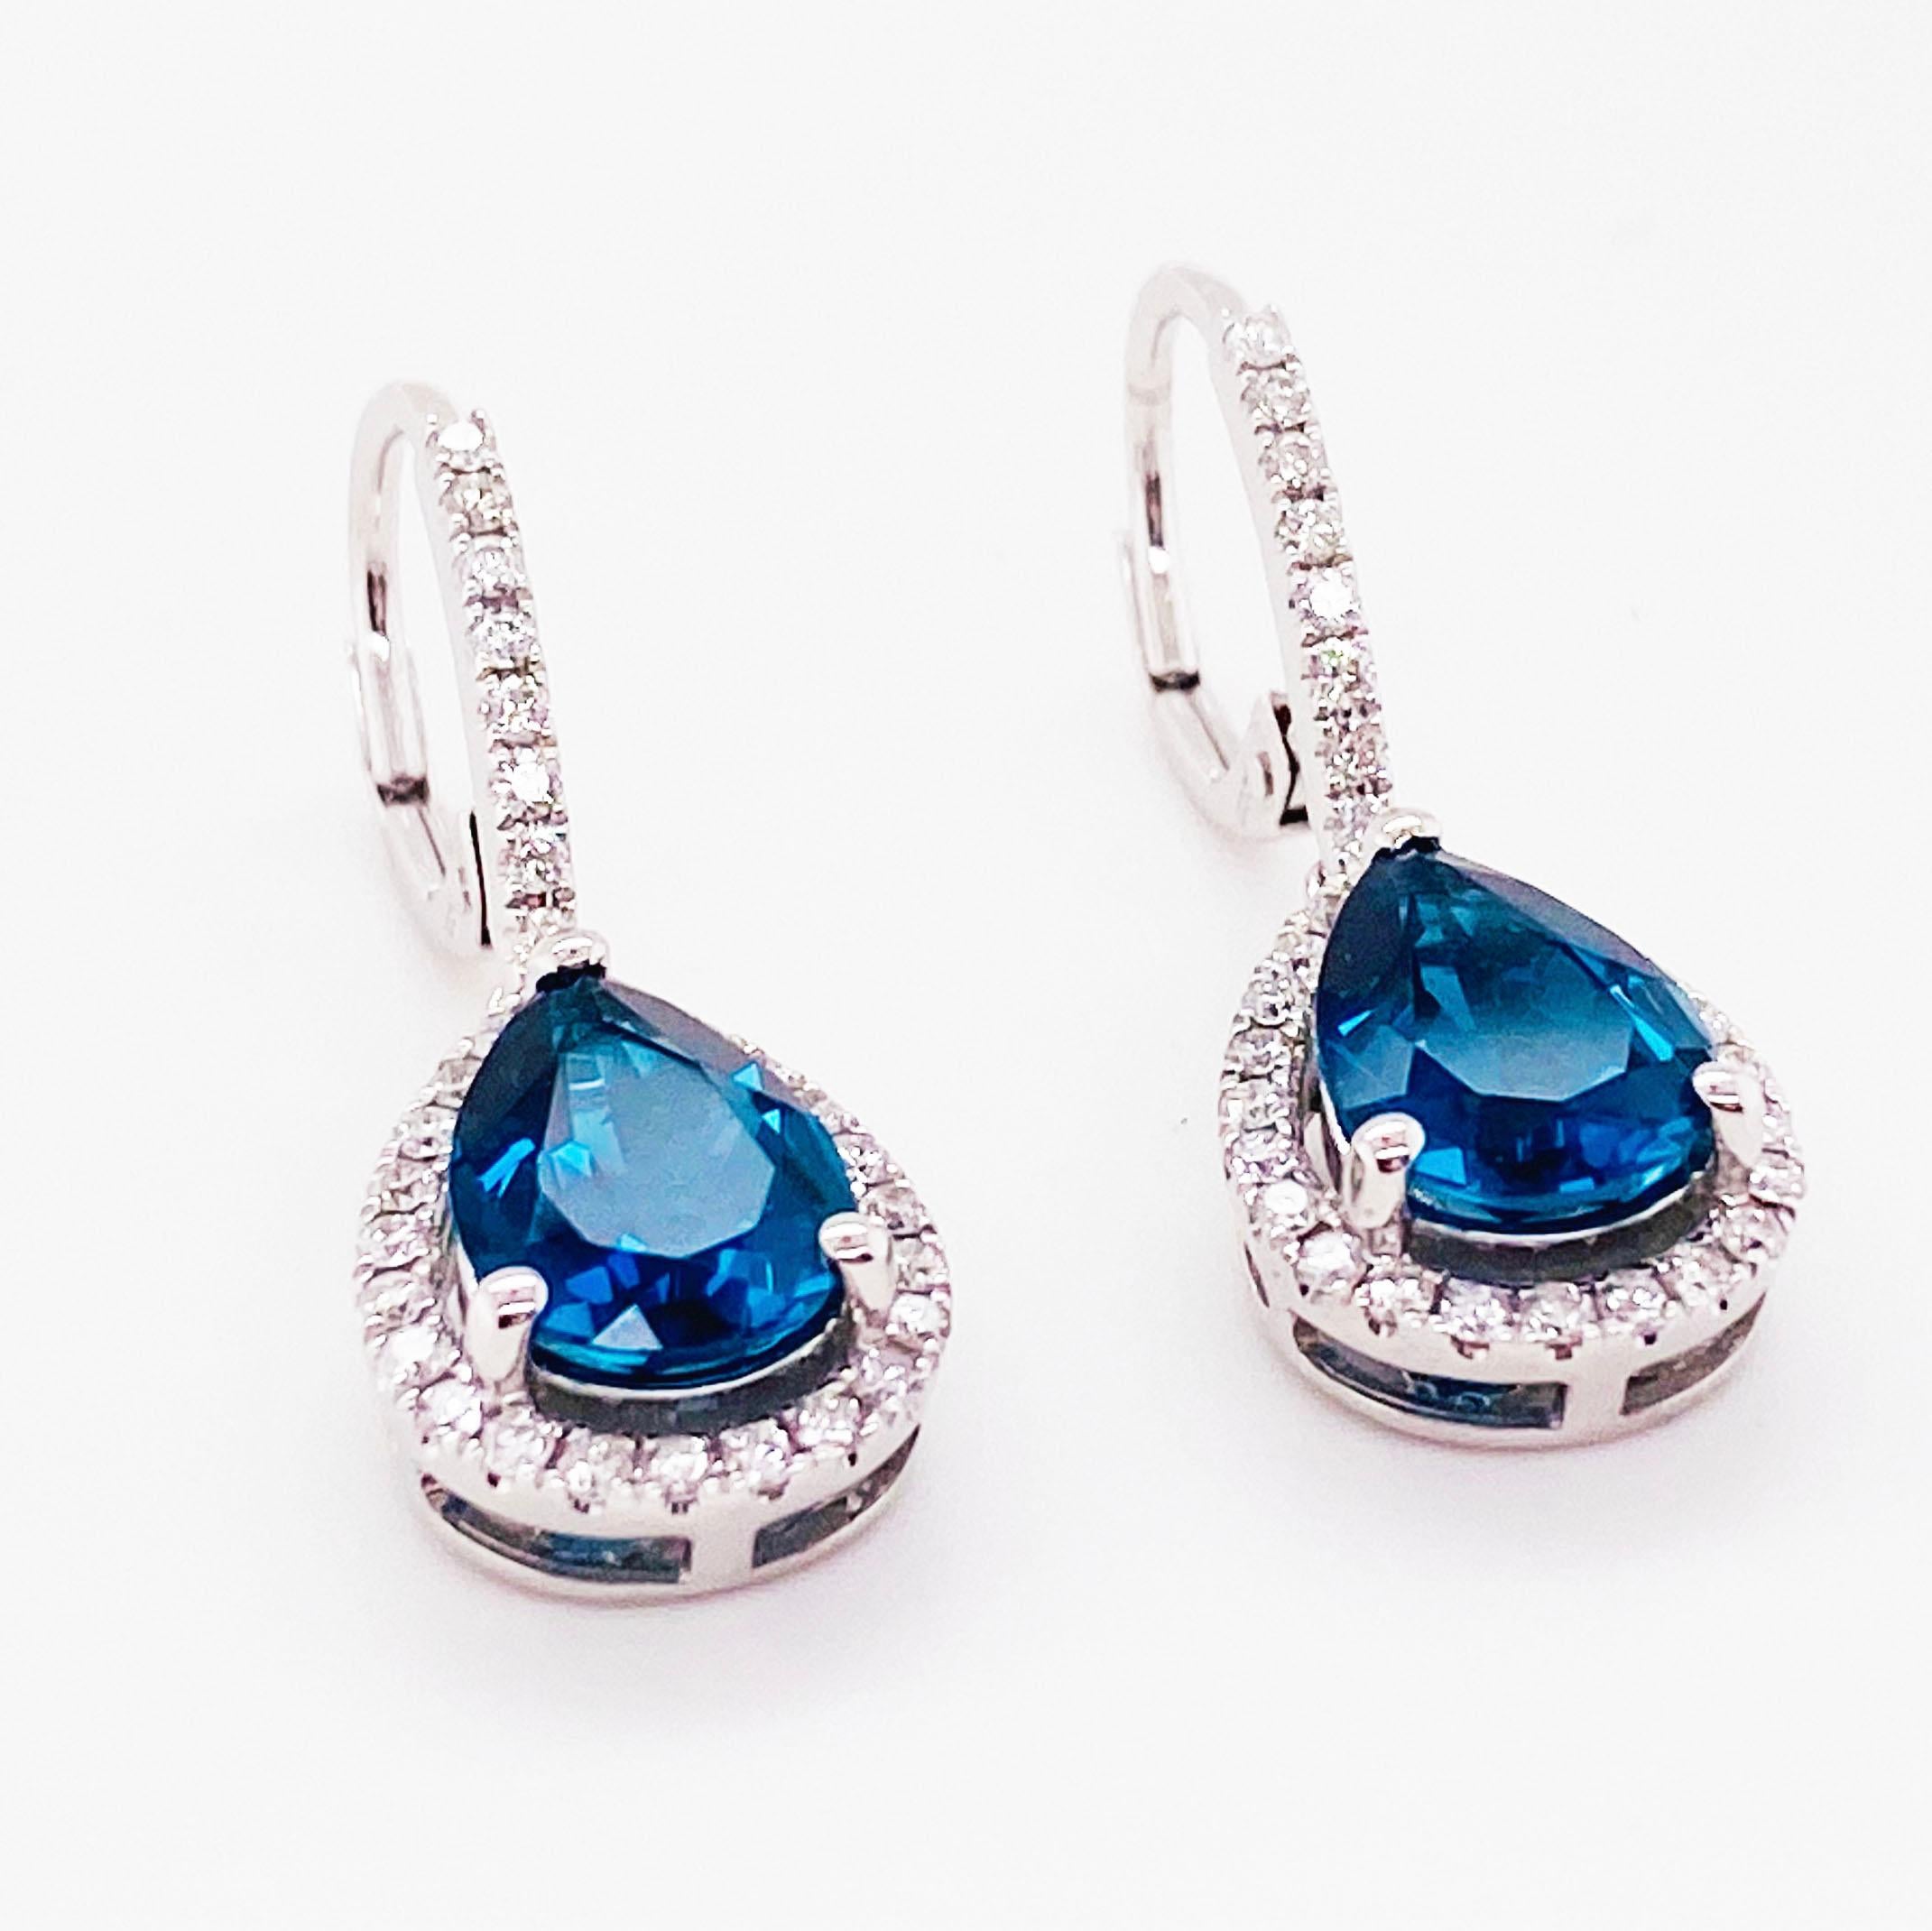 Die königsblauen Topas-Ohrringe sind rundherum mit Diamanten besetzt, die wie ein Heiligenschein wirken.  Diese Ohrringe sehen mit dem Londoner Blau des Topas aus wie königlich!  Die echten Edelsteine haben einen tropfen- oder birnenförmigen